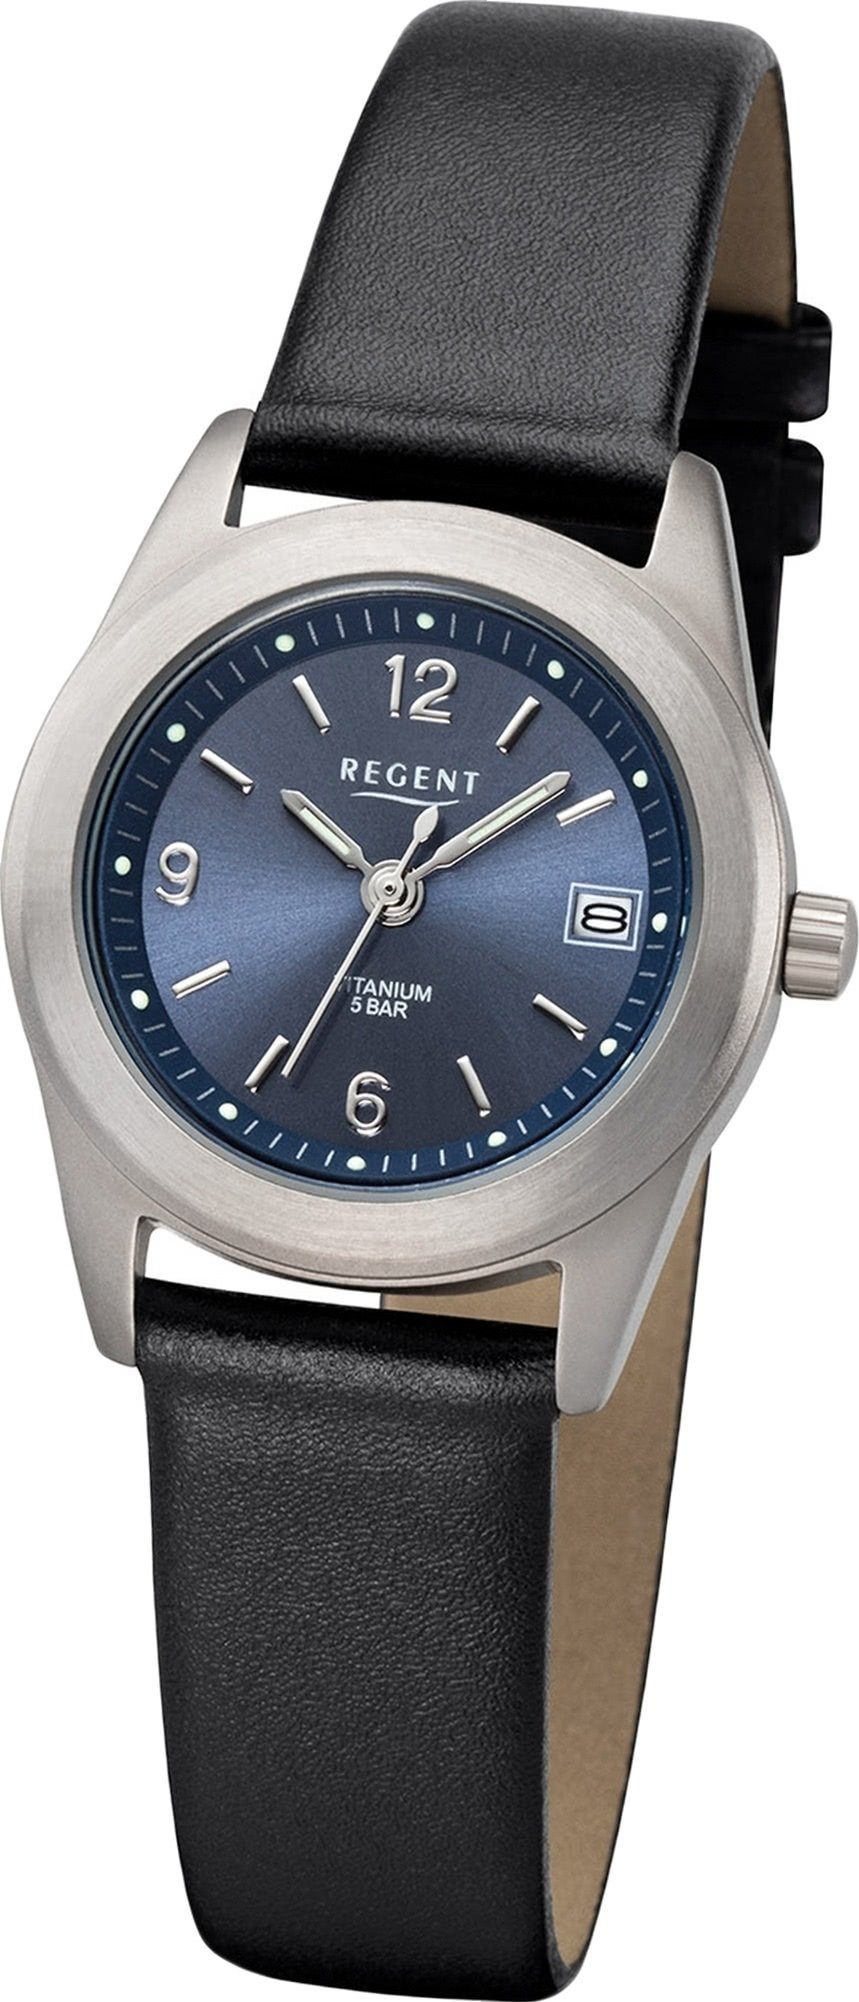 Regent Quarzuhr Regent Leder Damen Uhr F-1214 Analog, Damenuhr Lederarmband schwarz, rundes Gehäuse, klein (ca. 27mm)